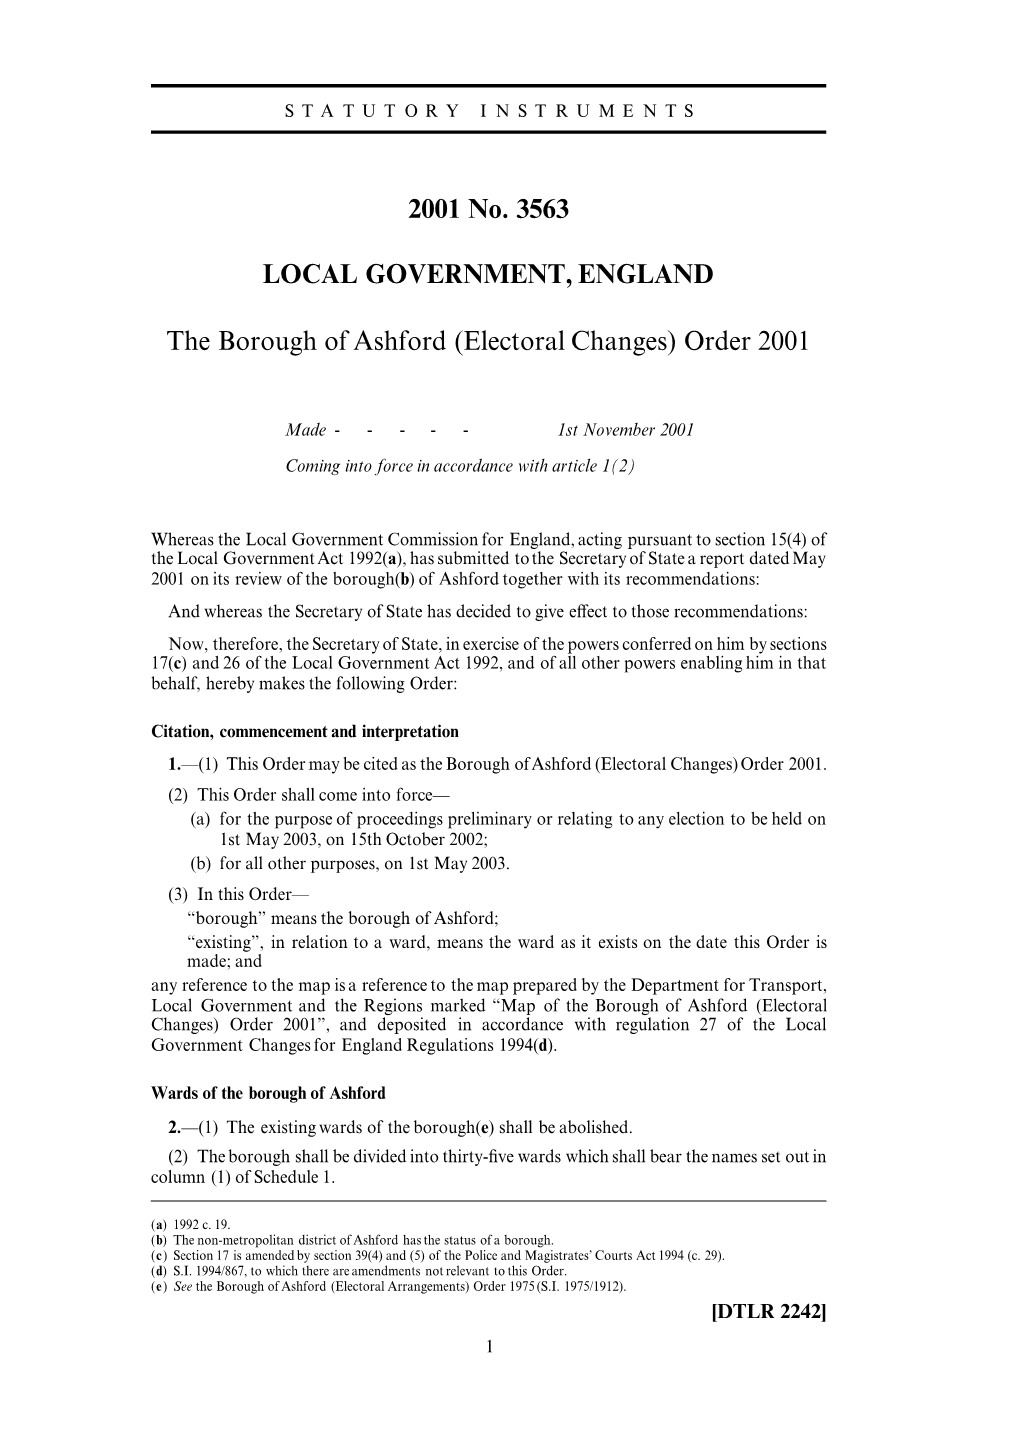 Electoral Changes) Order 2001